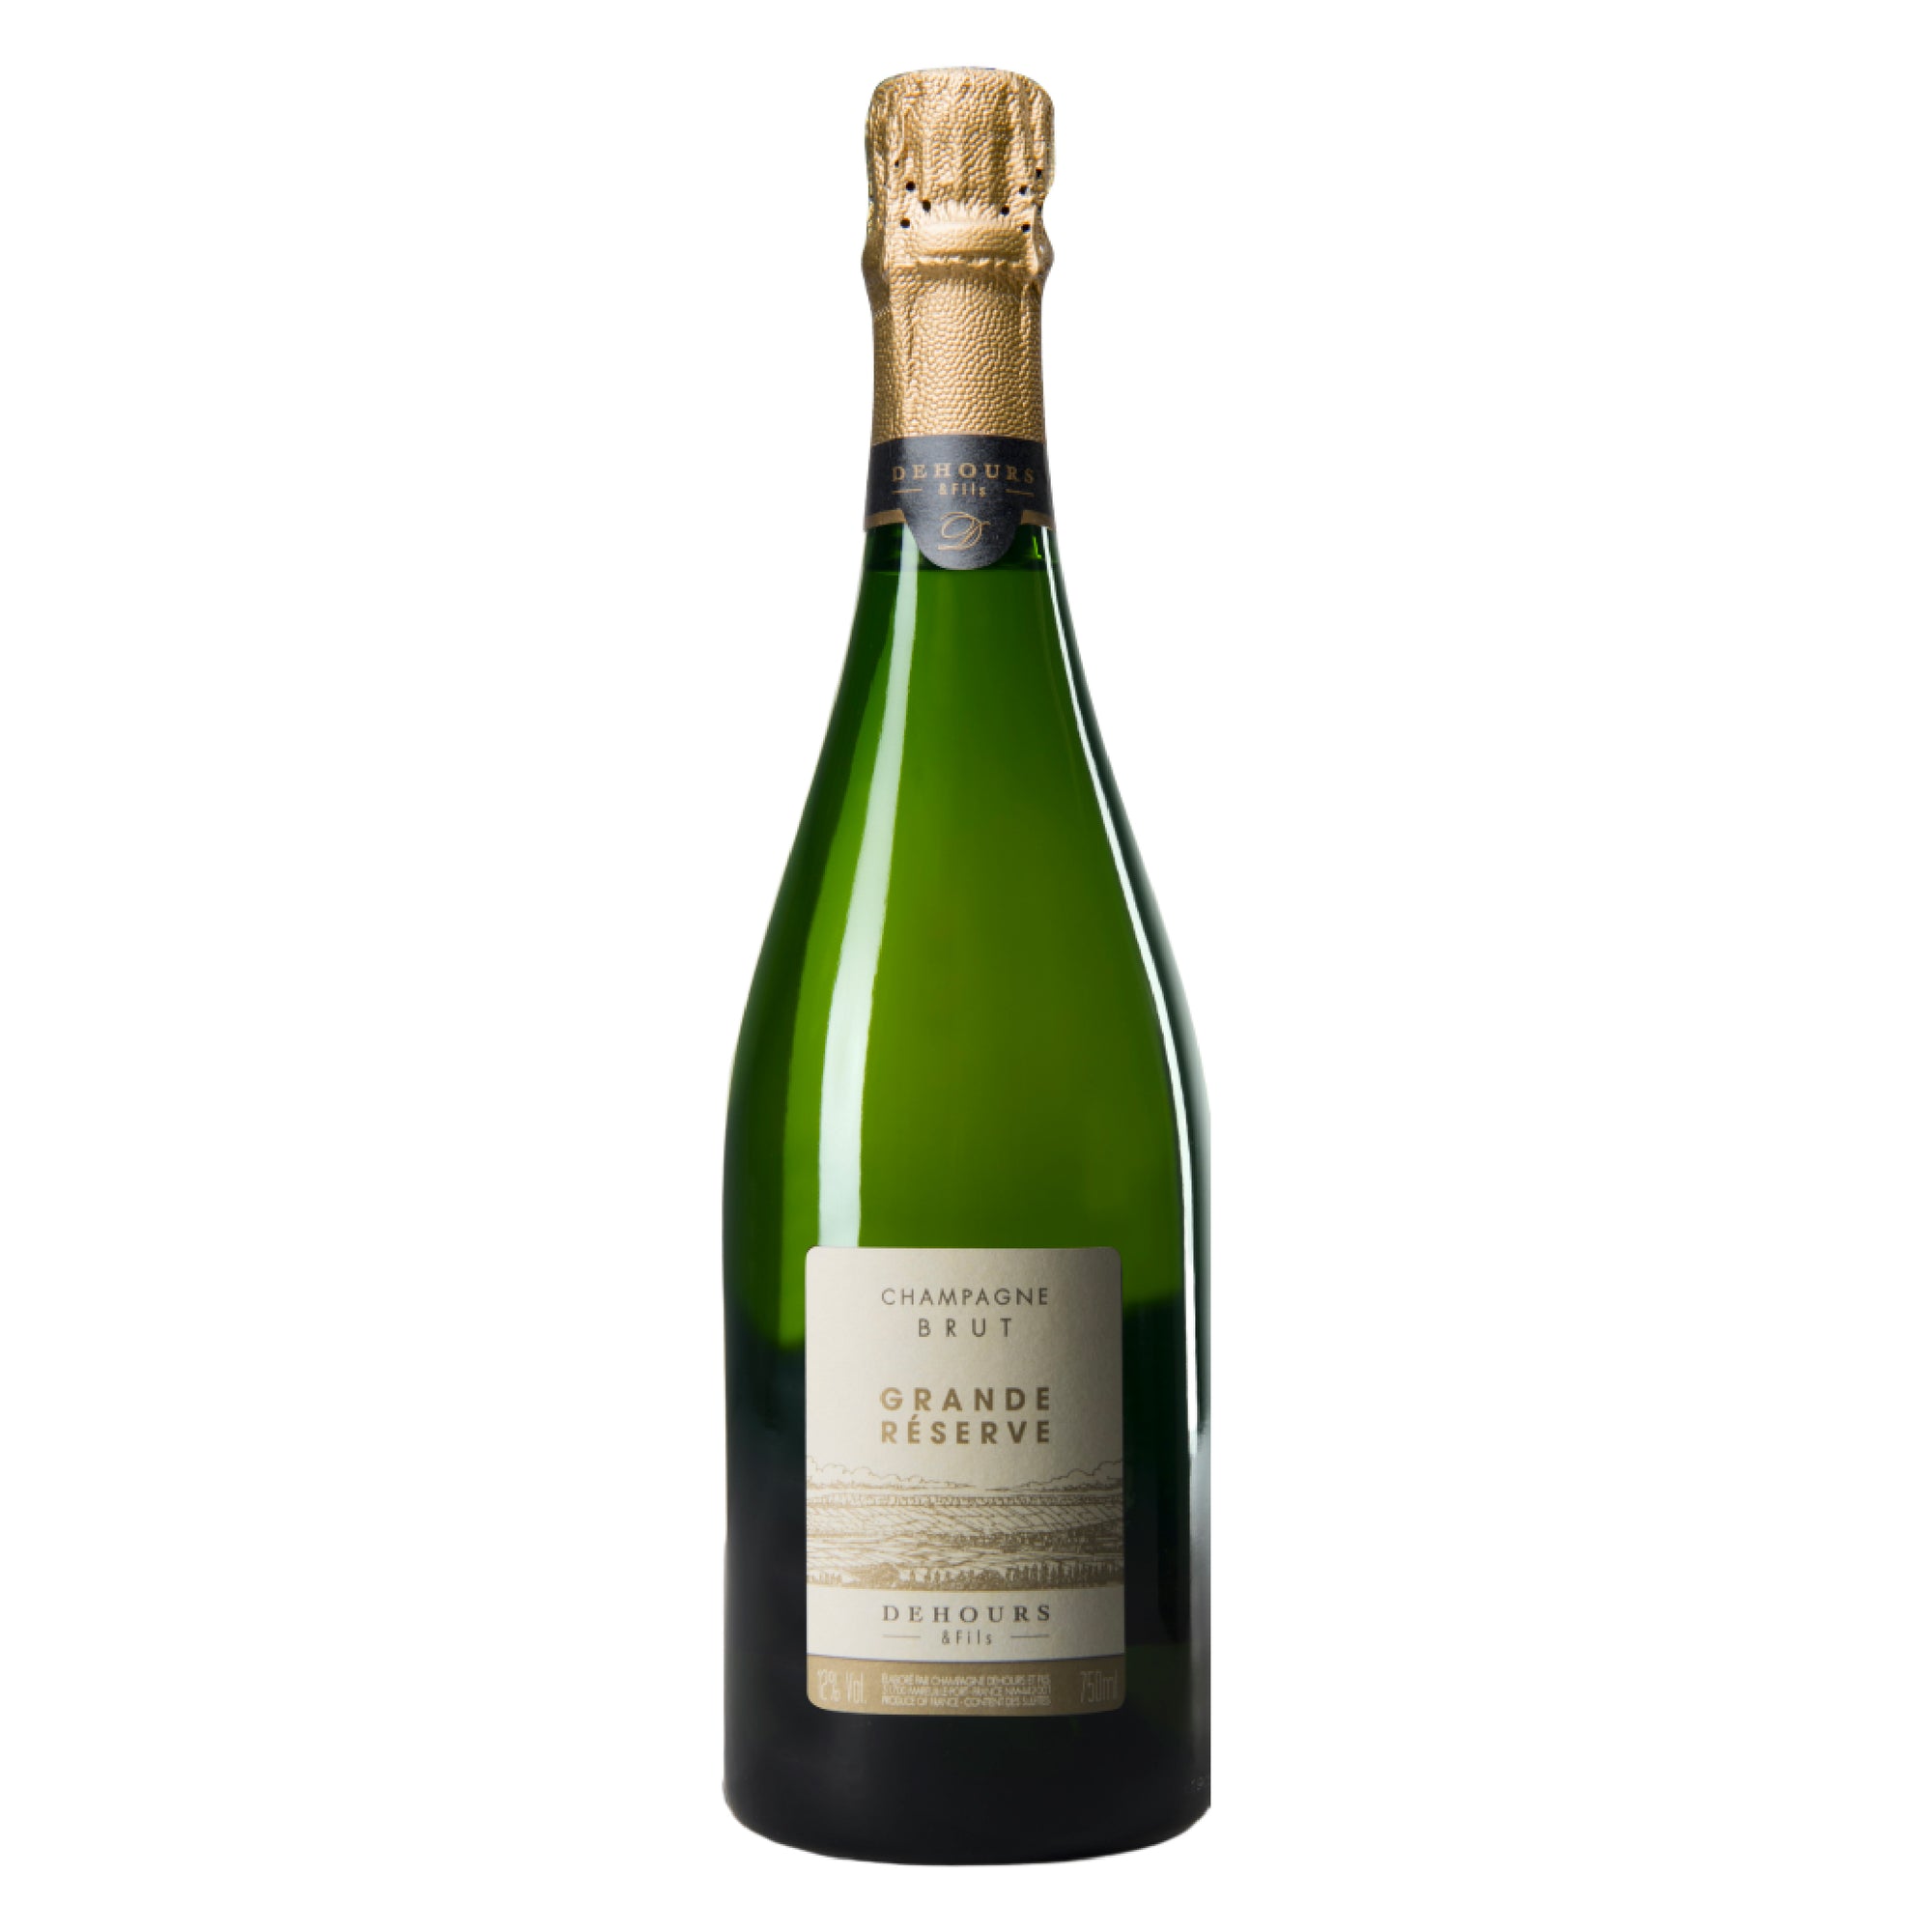 DEHOURS & FILS Champagne Brut Grande Reserve NV - Magnum 1.5L